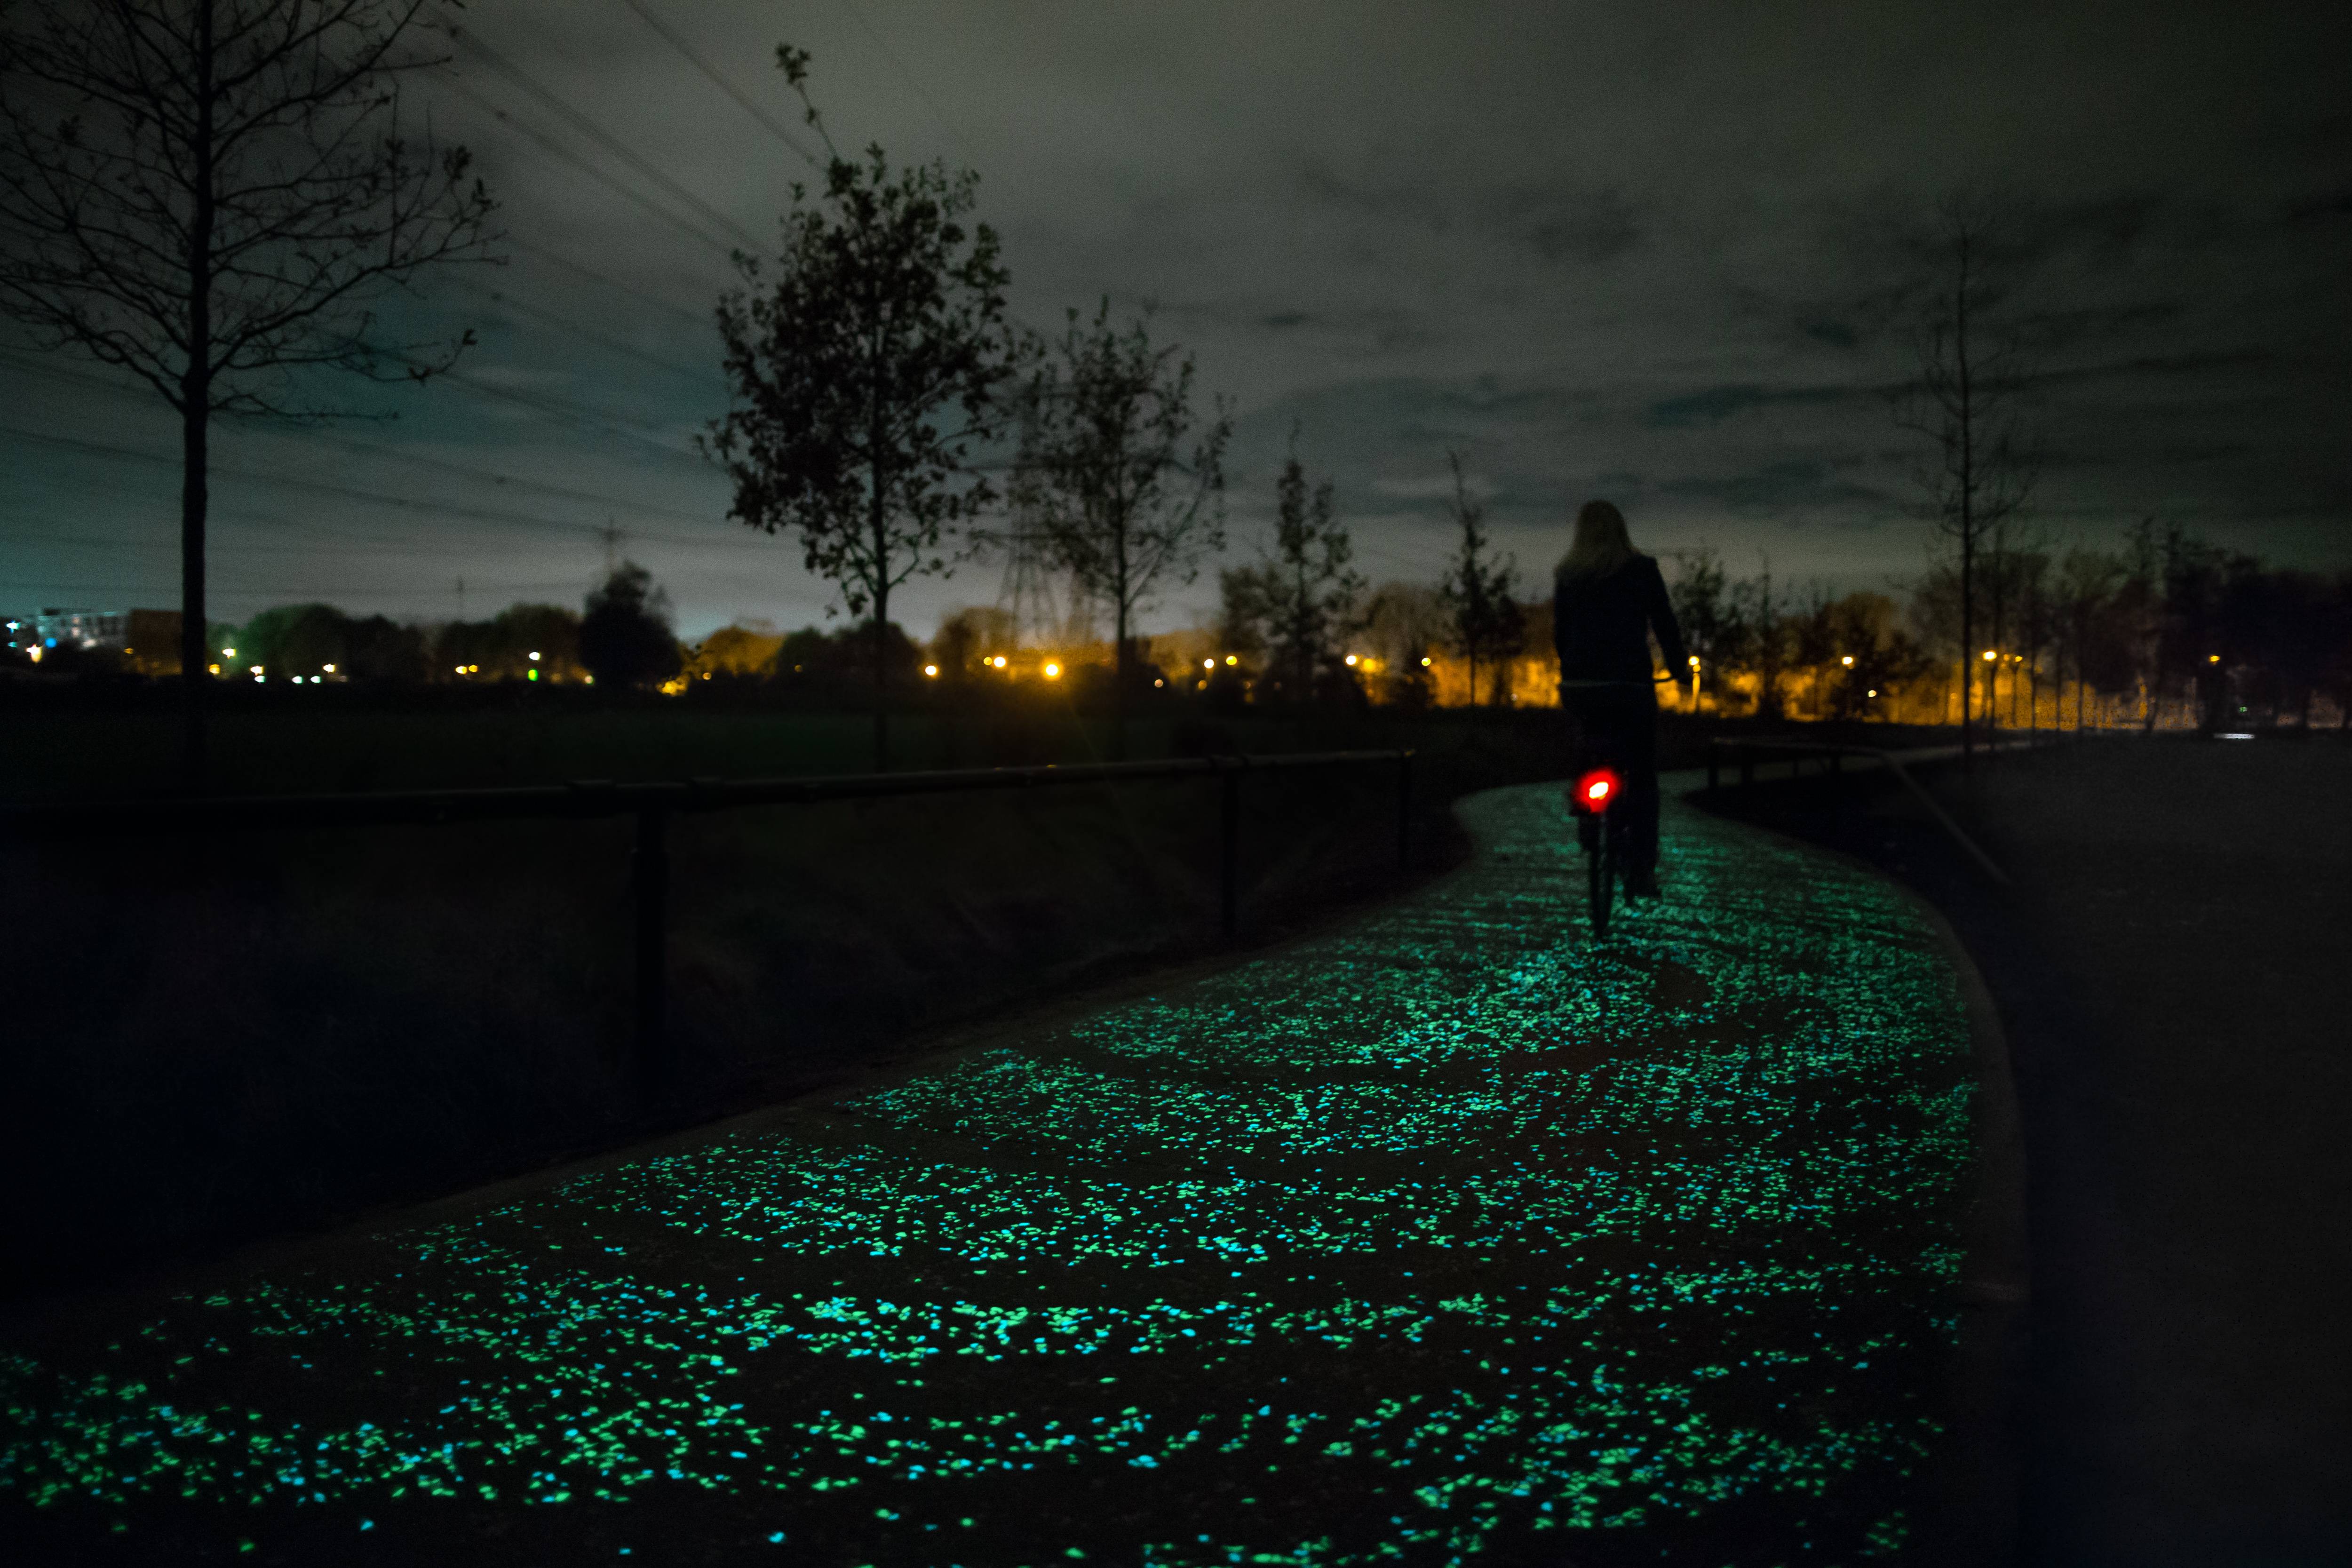 Van Gogh cycle path in Eindhoven